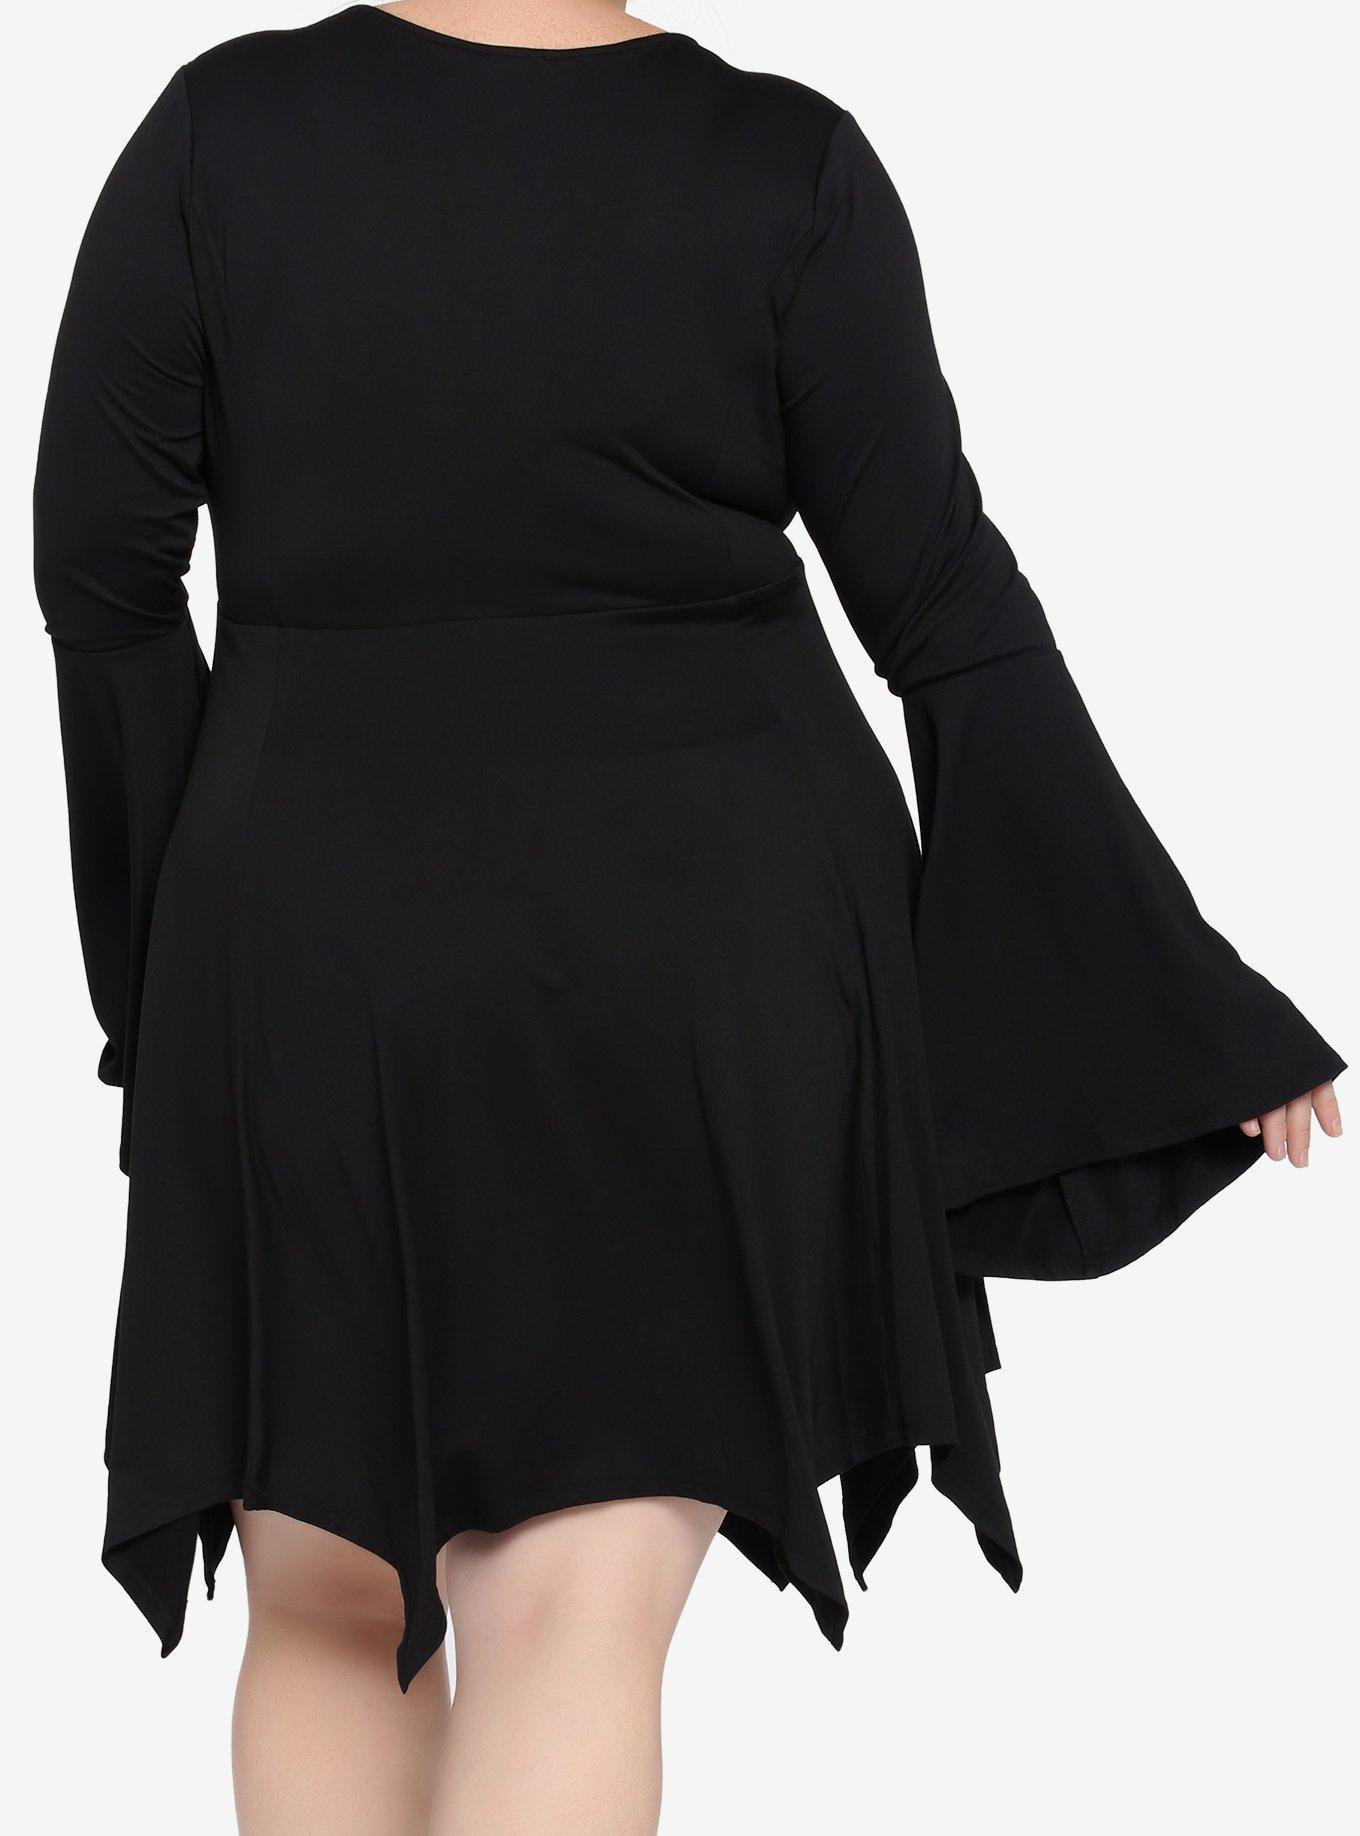 Black Lace-Up Hanky Hem Dress Plus Size, BLACK, alternate